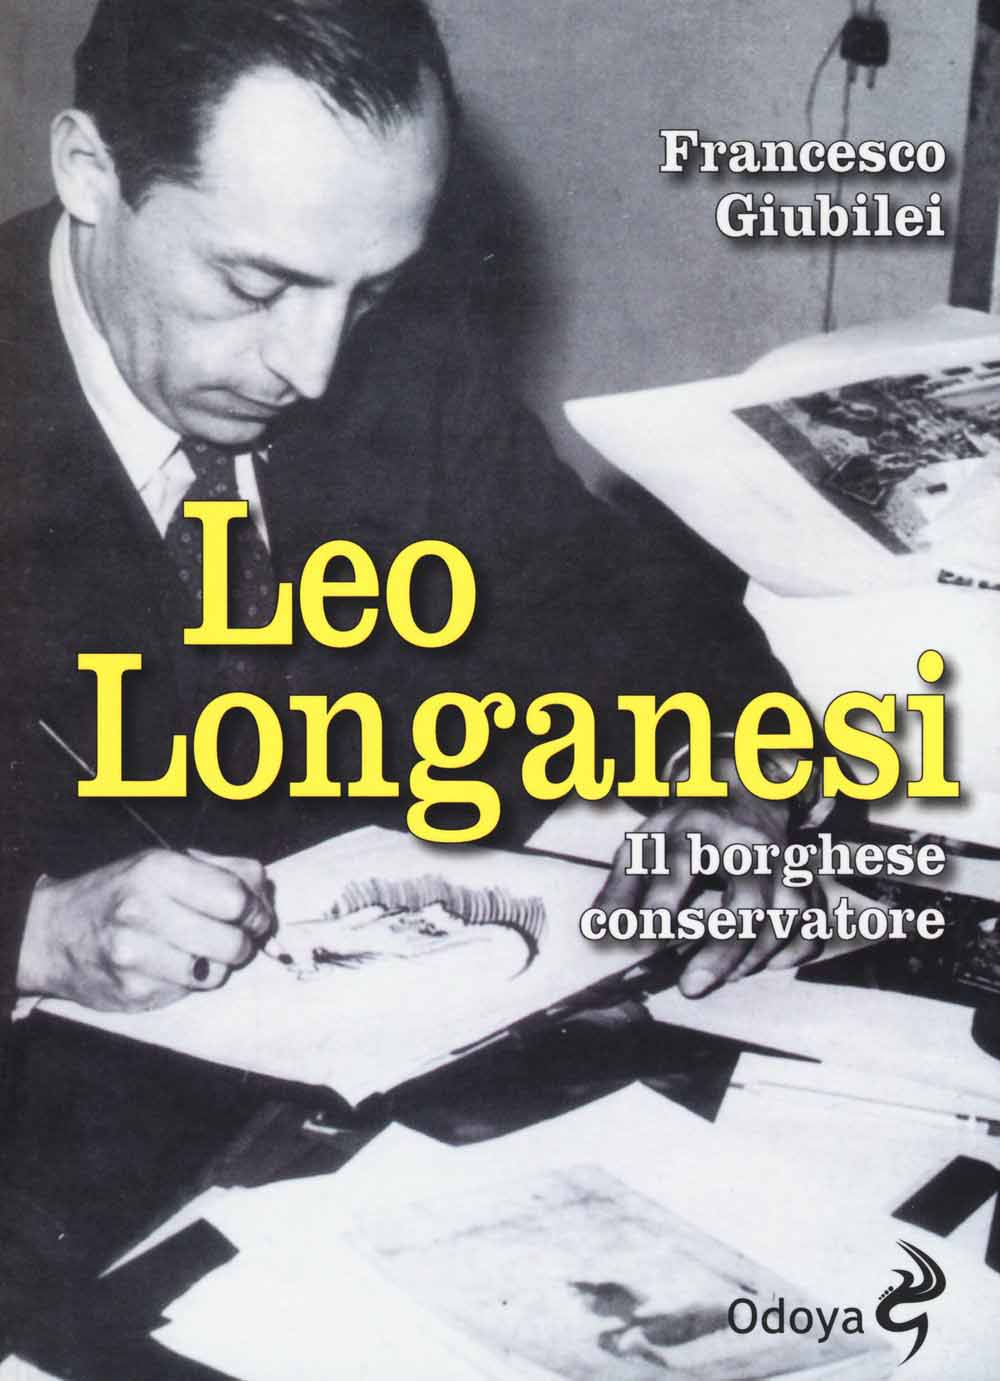 Libri Francesco Giubilei - Leo Longanesi. Il Borghese Conservatore NUOVO SIGILLATO, EDIZIONE DEL 23/07/2015 SUBITO DISPONIBILE